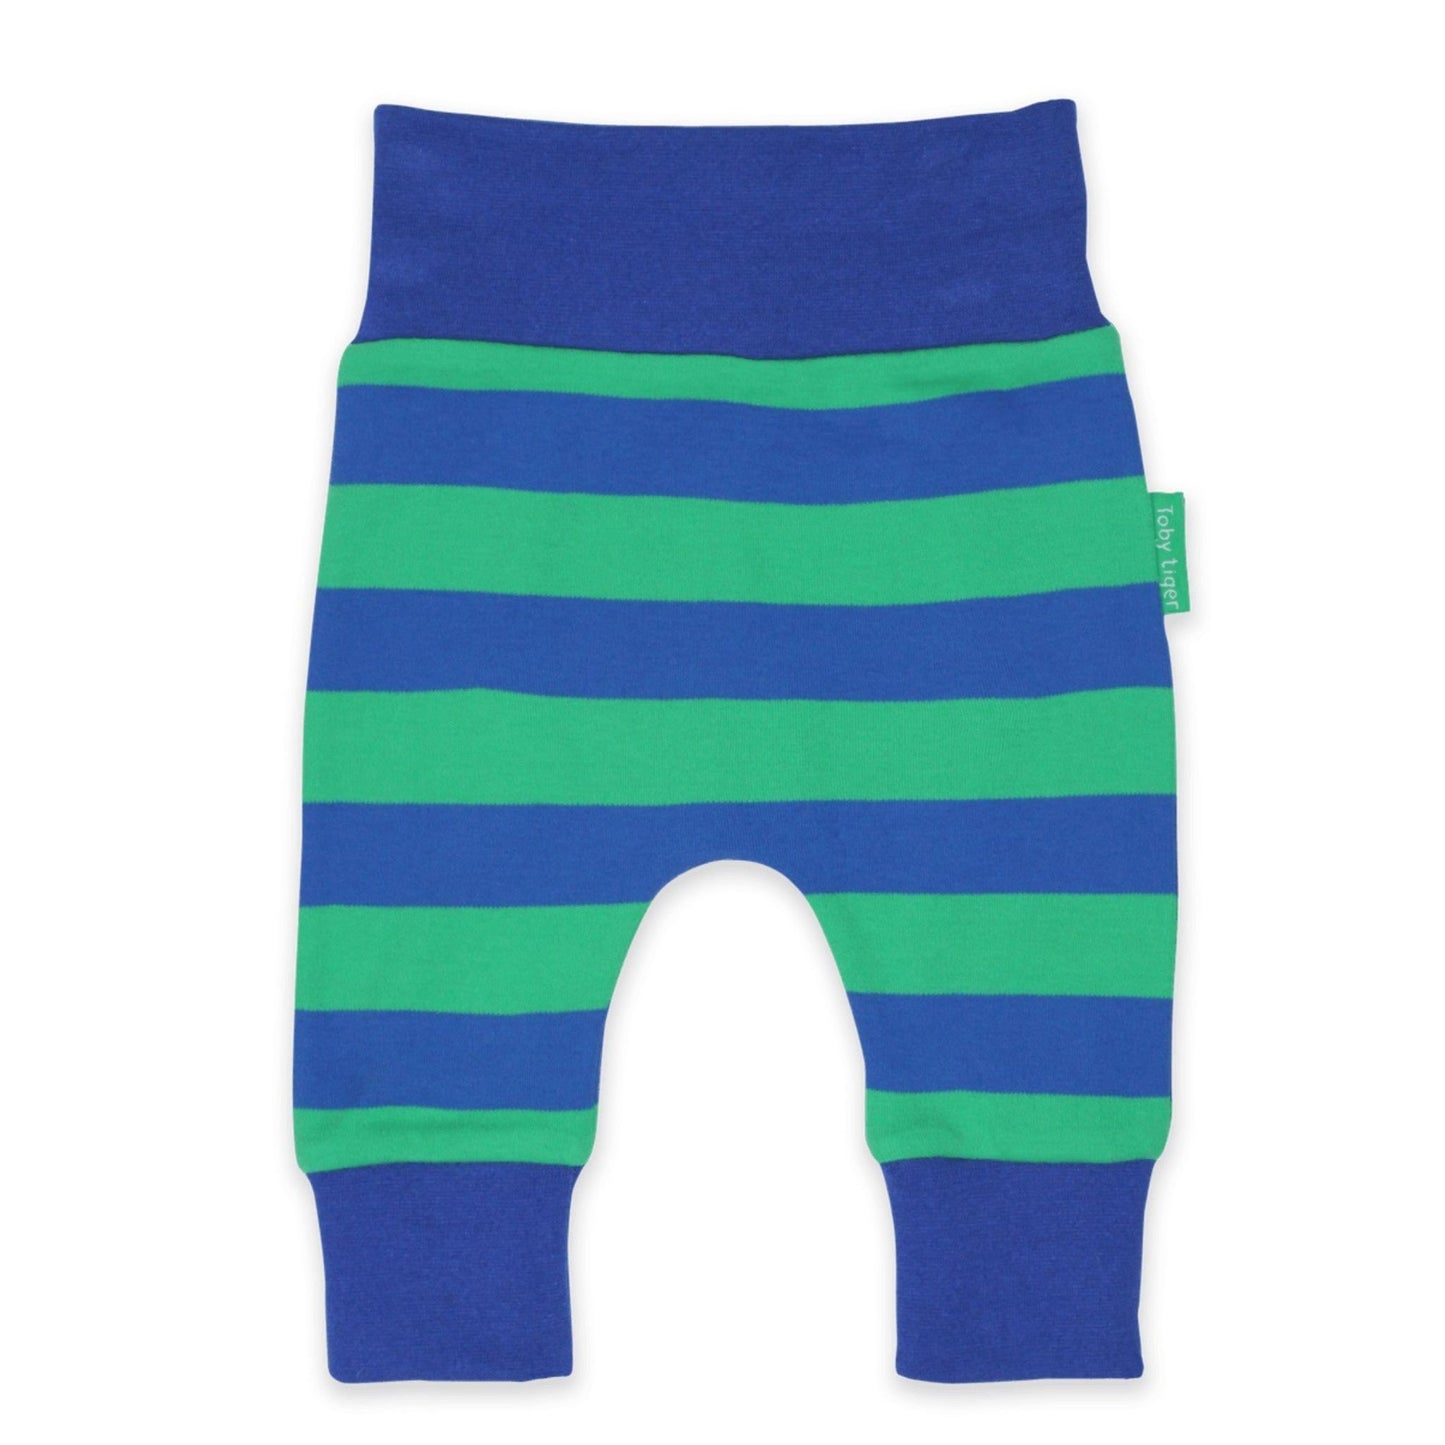 Yoga pants - blue green stripe